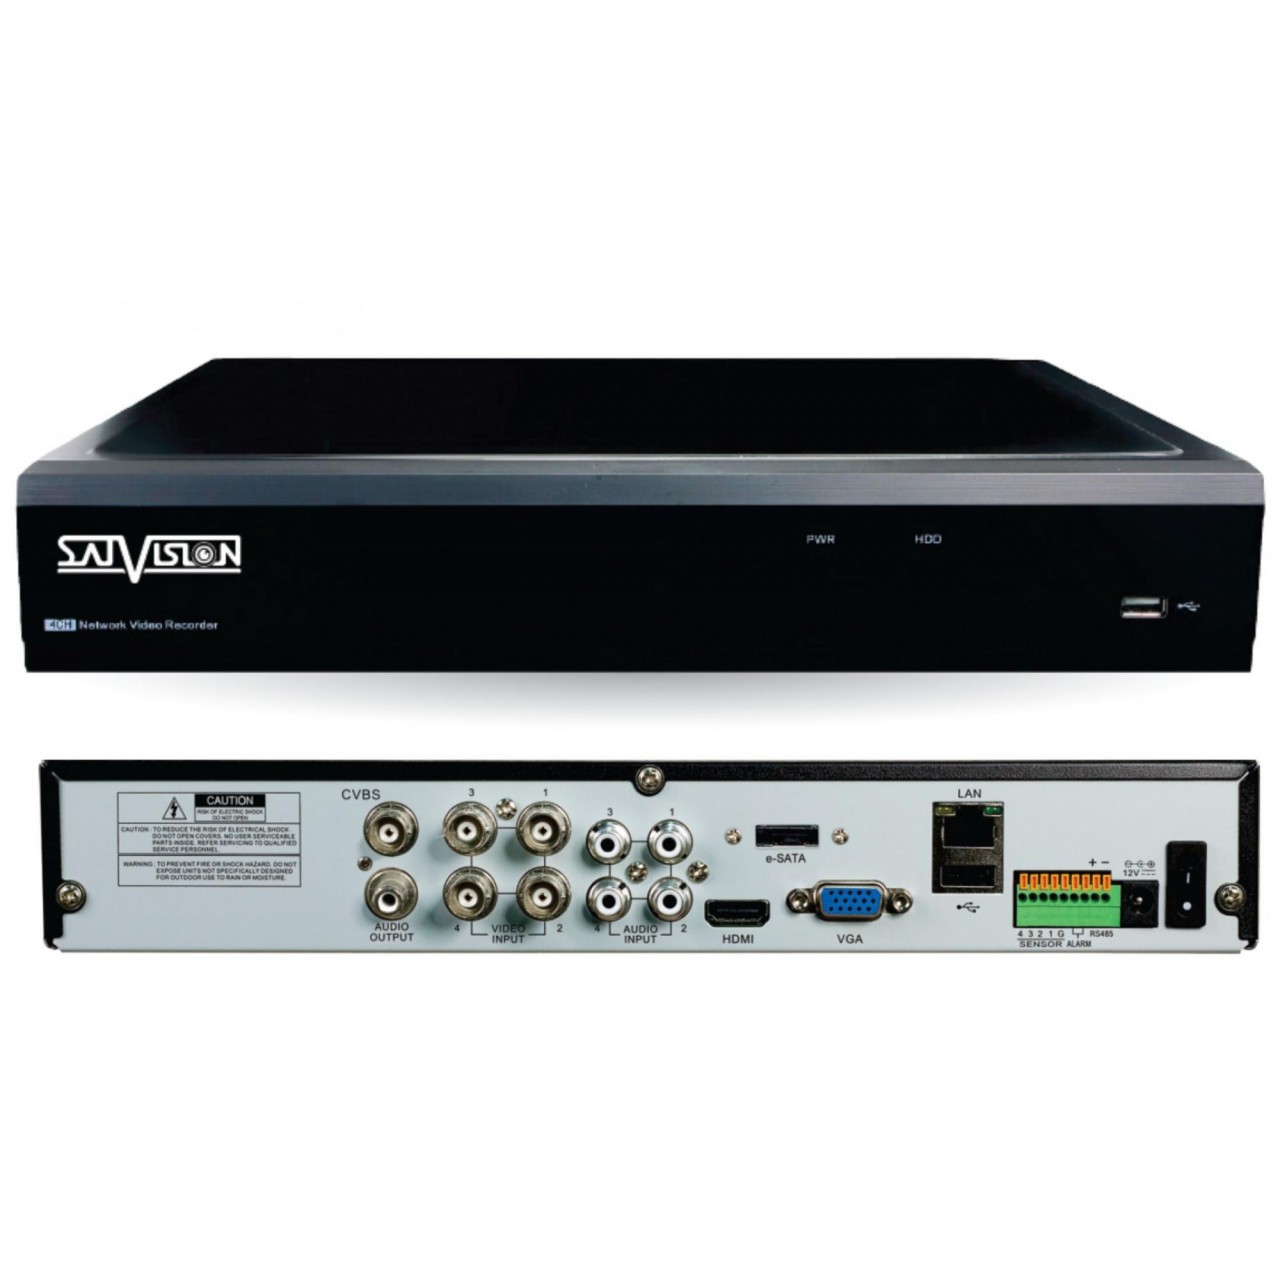 Гибридный 8-ми канальный видеорегистратор SVR-8115F v3.0